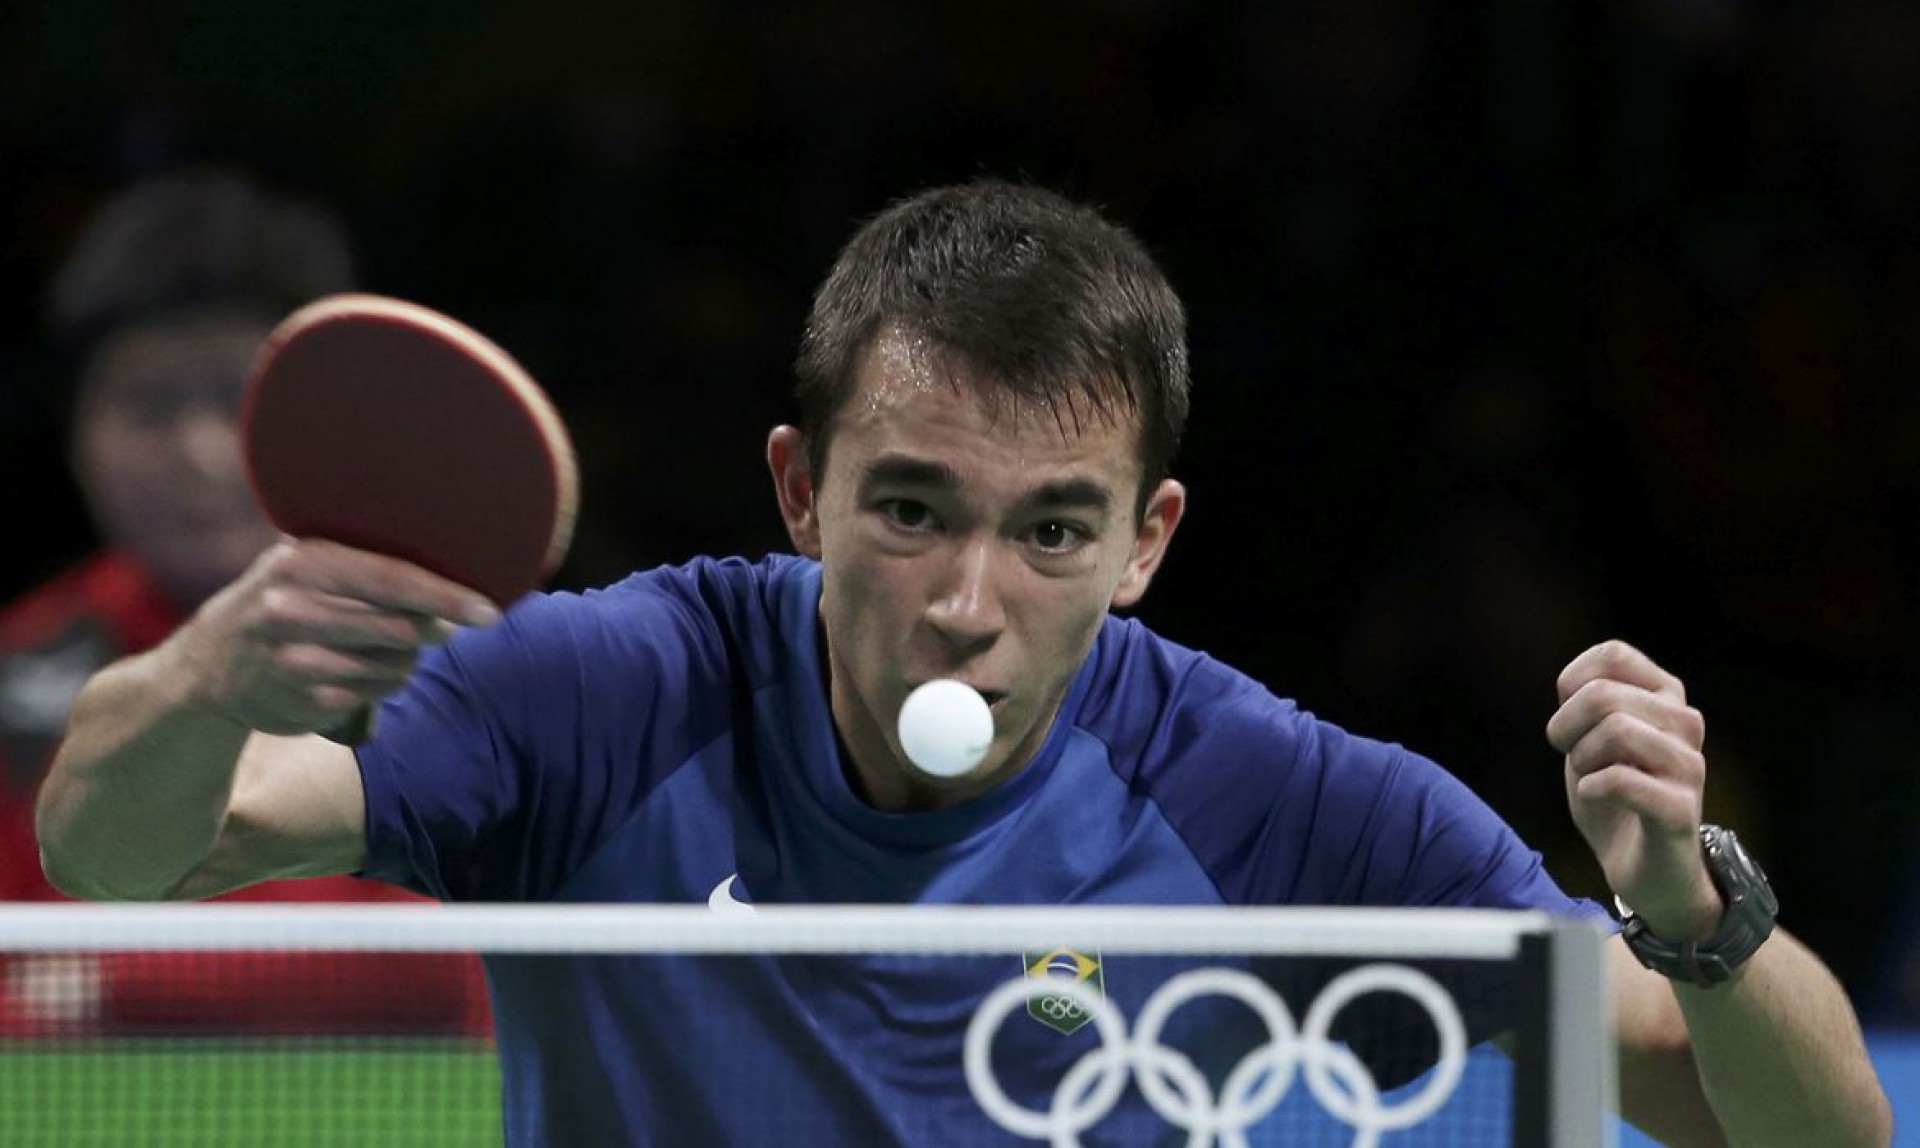 Hugo Calderano sonha com a glória olímpica em Tóquio (Foto: Divulgação)